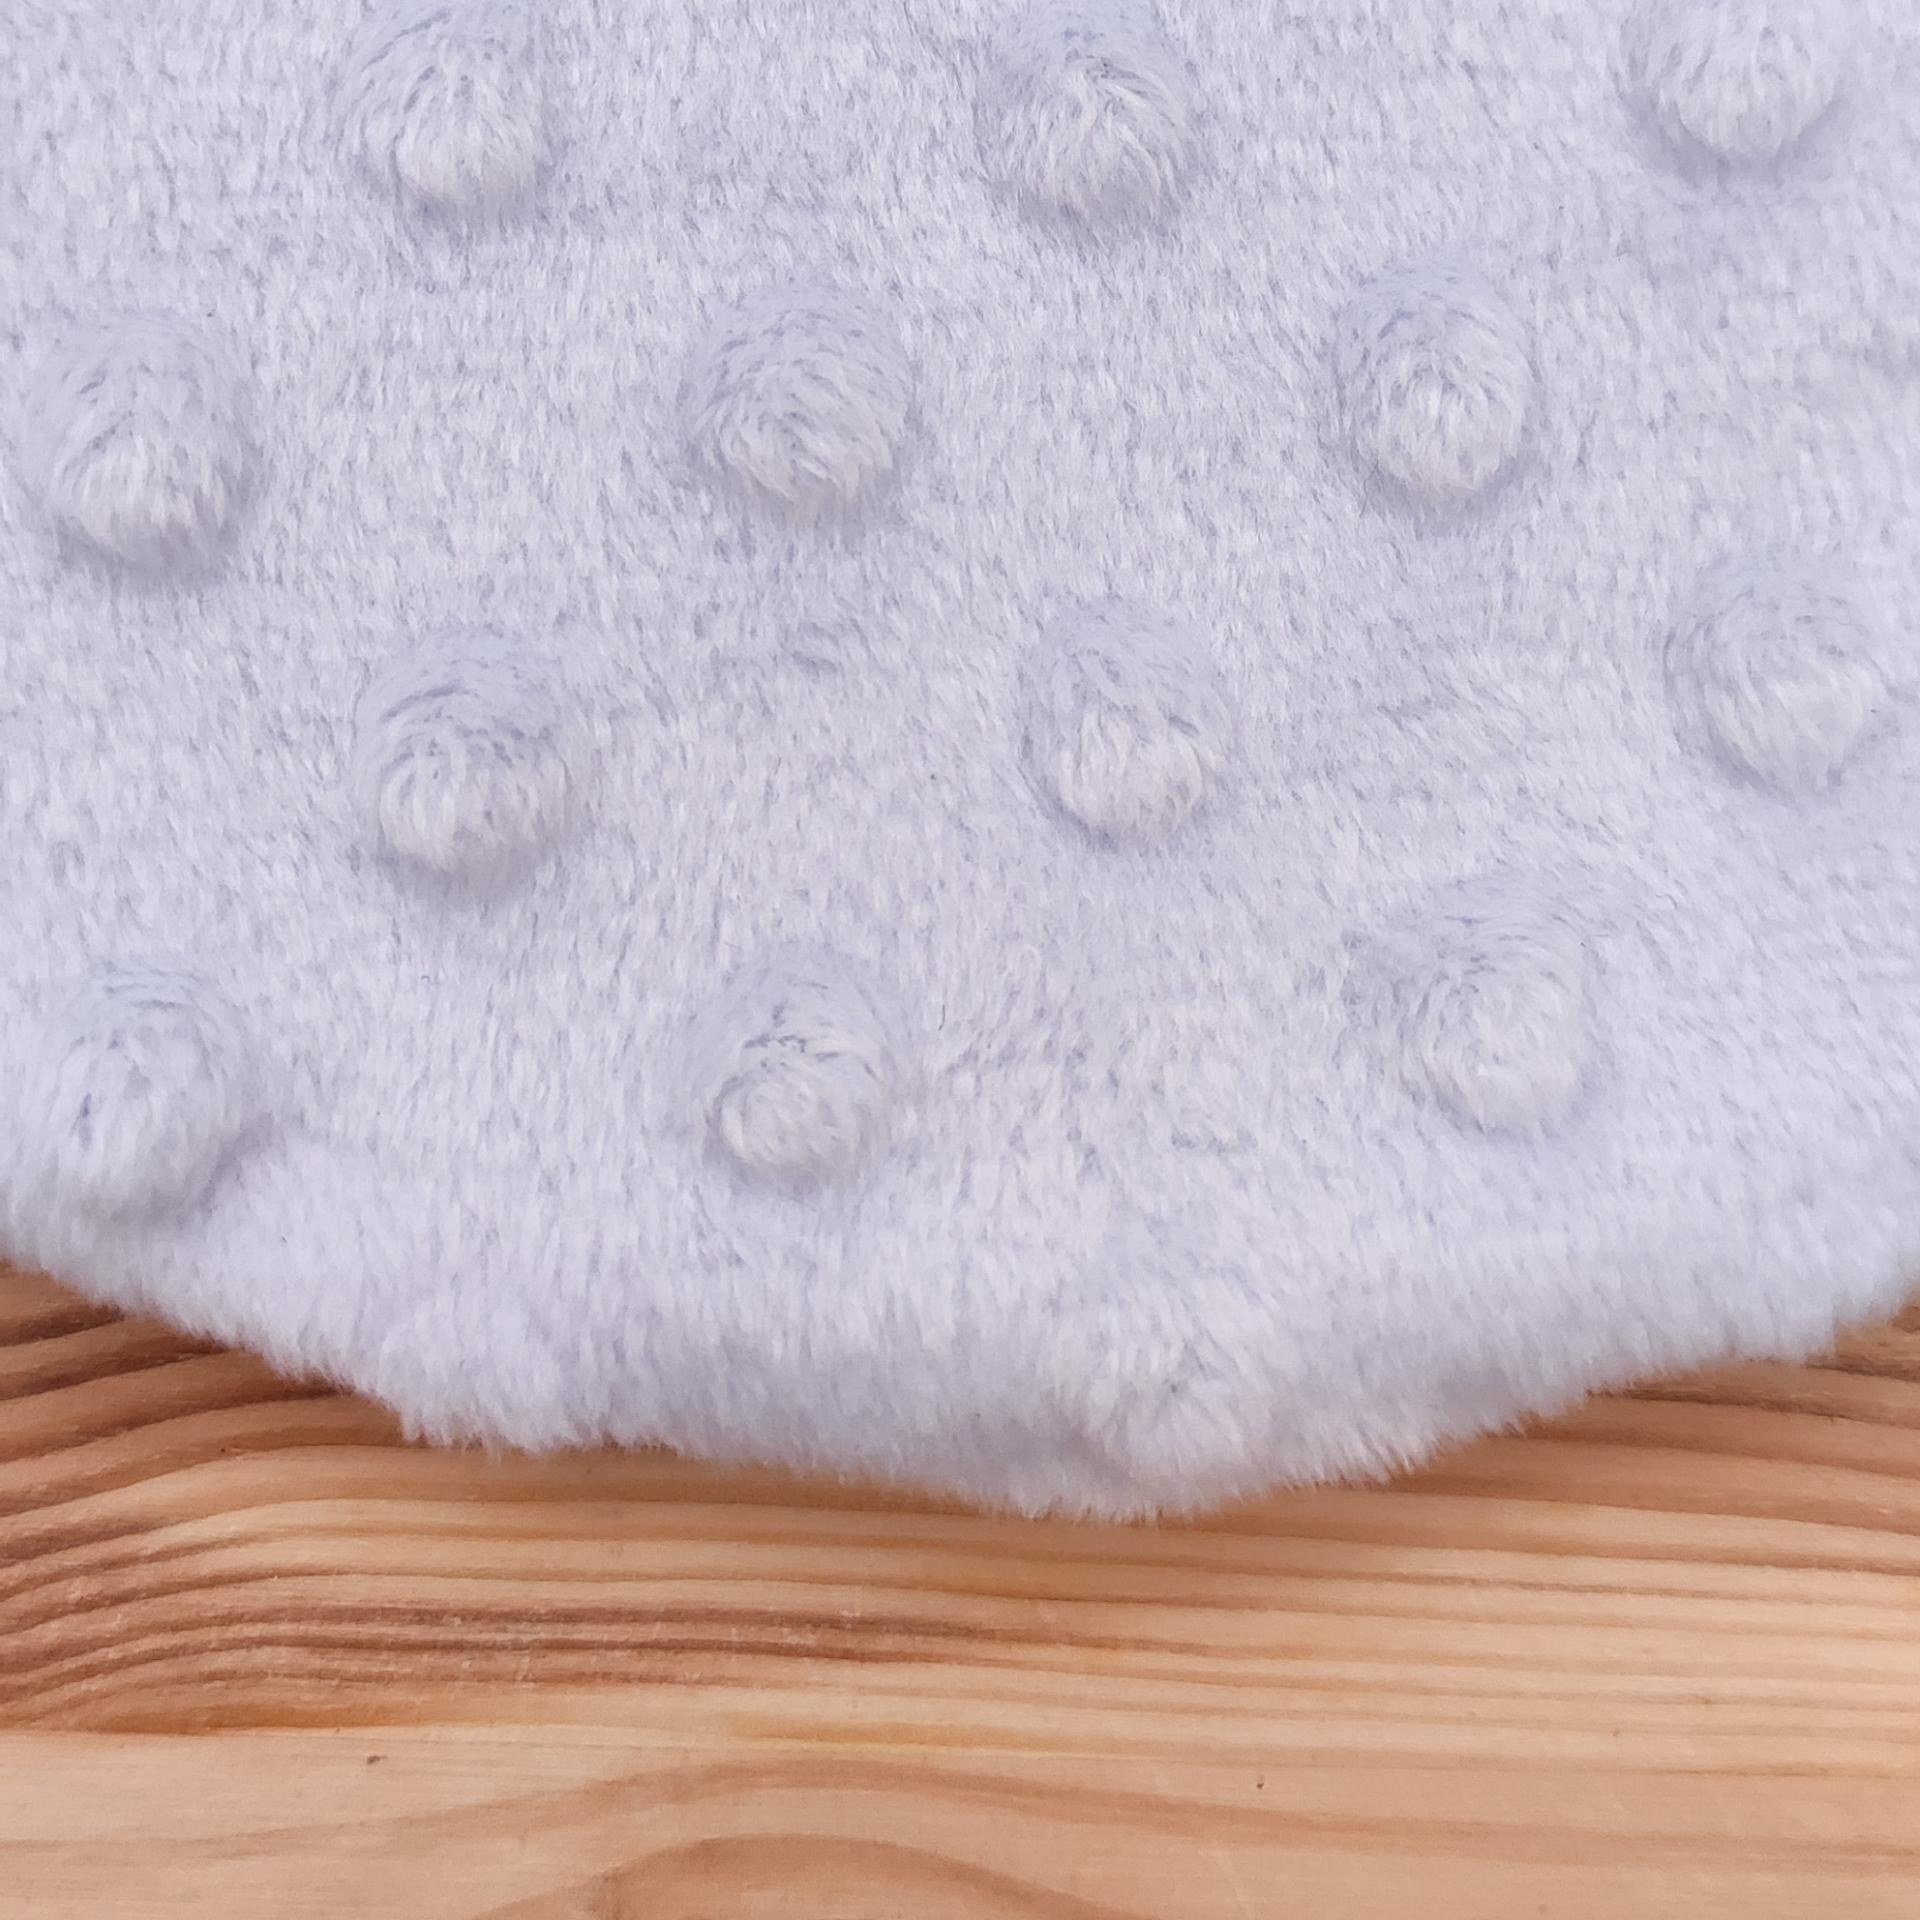 Le minky : un tissu ultra doux et confortable qui offre un vrai moment de tendresse à votre bébé grâce à notre doudou sensoriel.